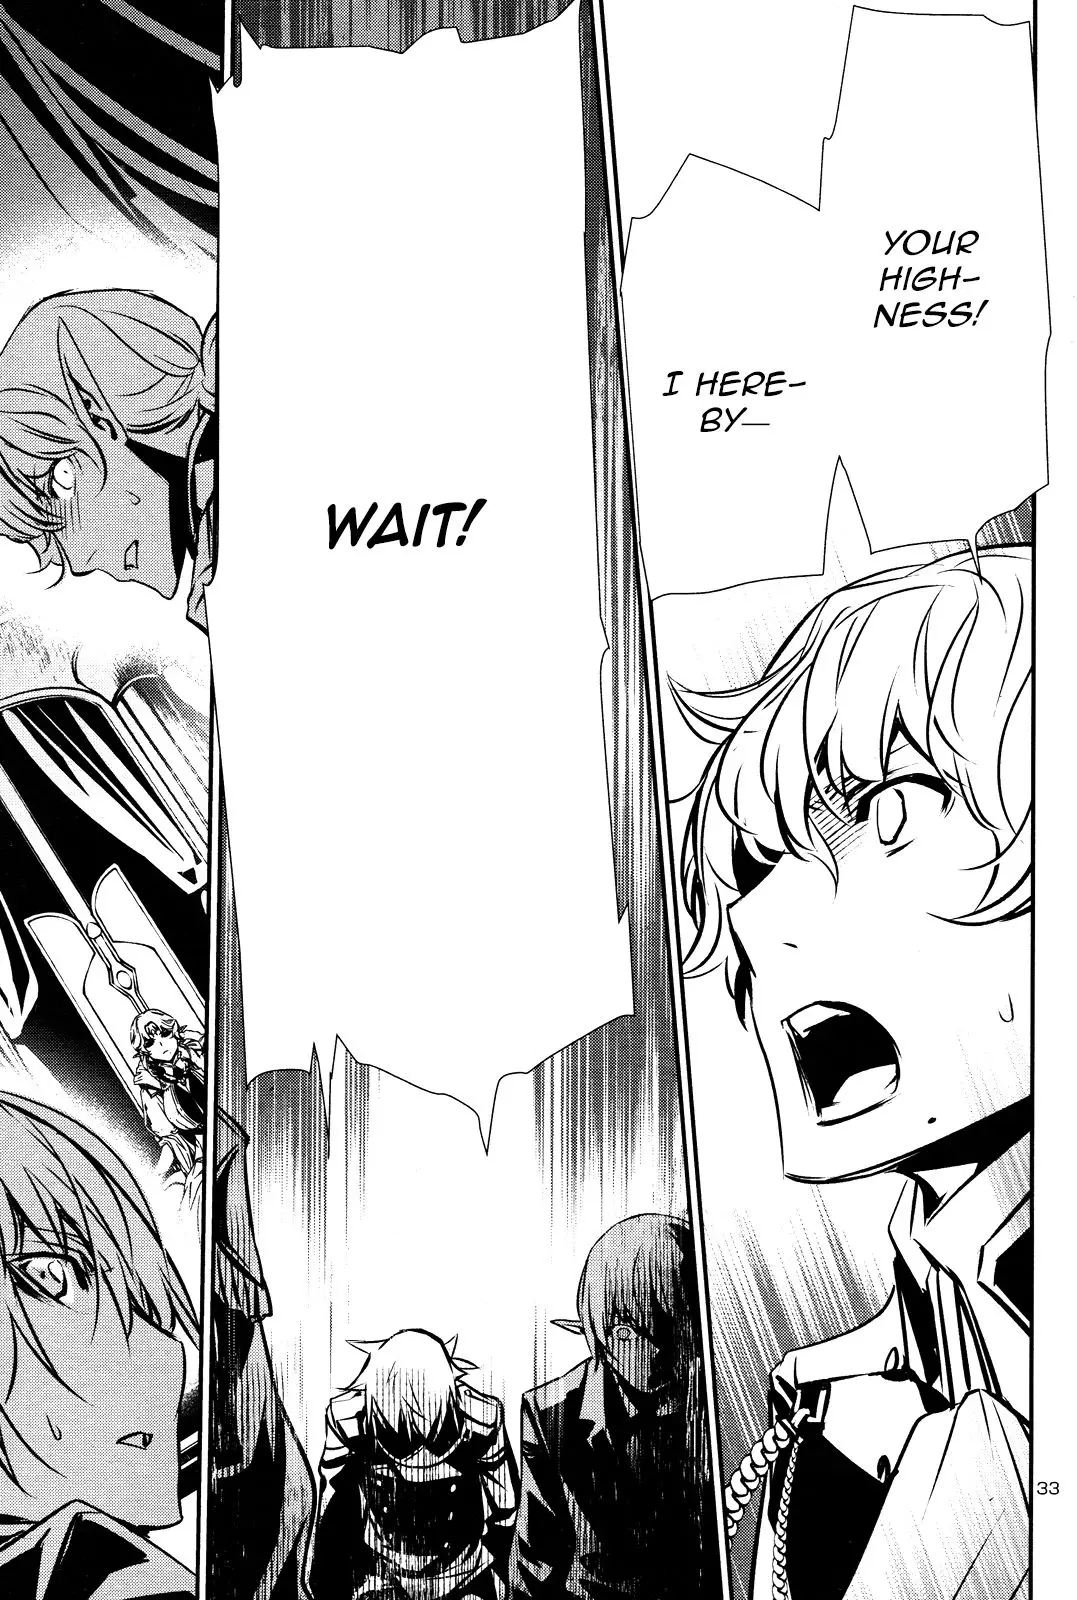 Shinju no Nectar - 38 page 33